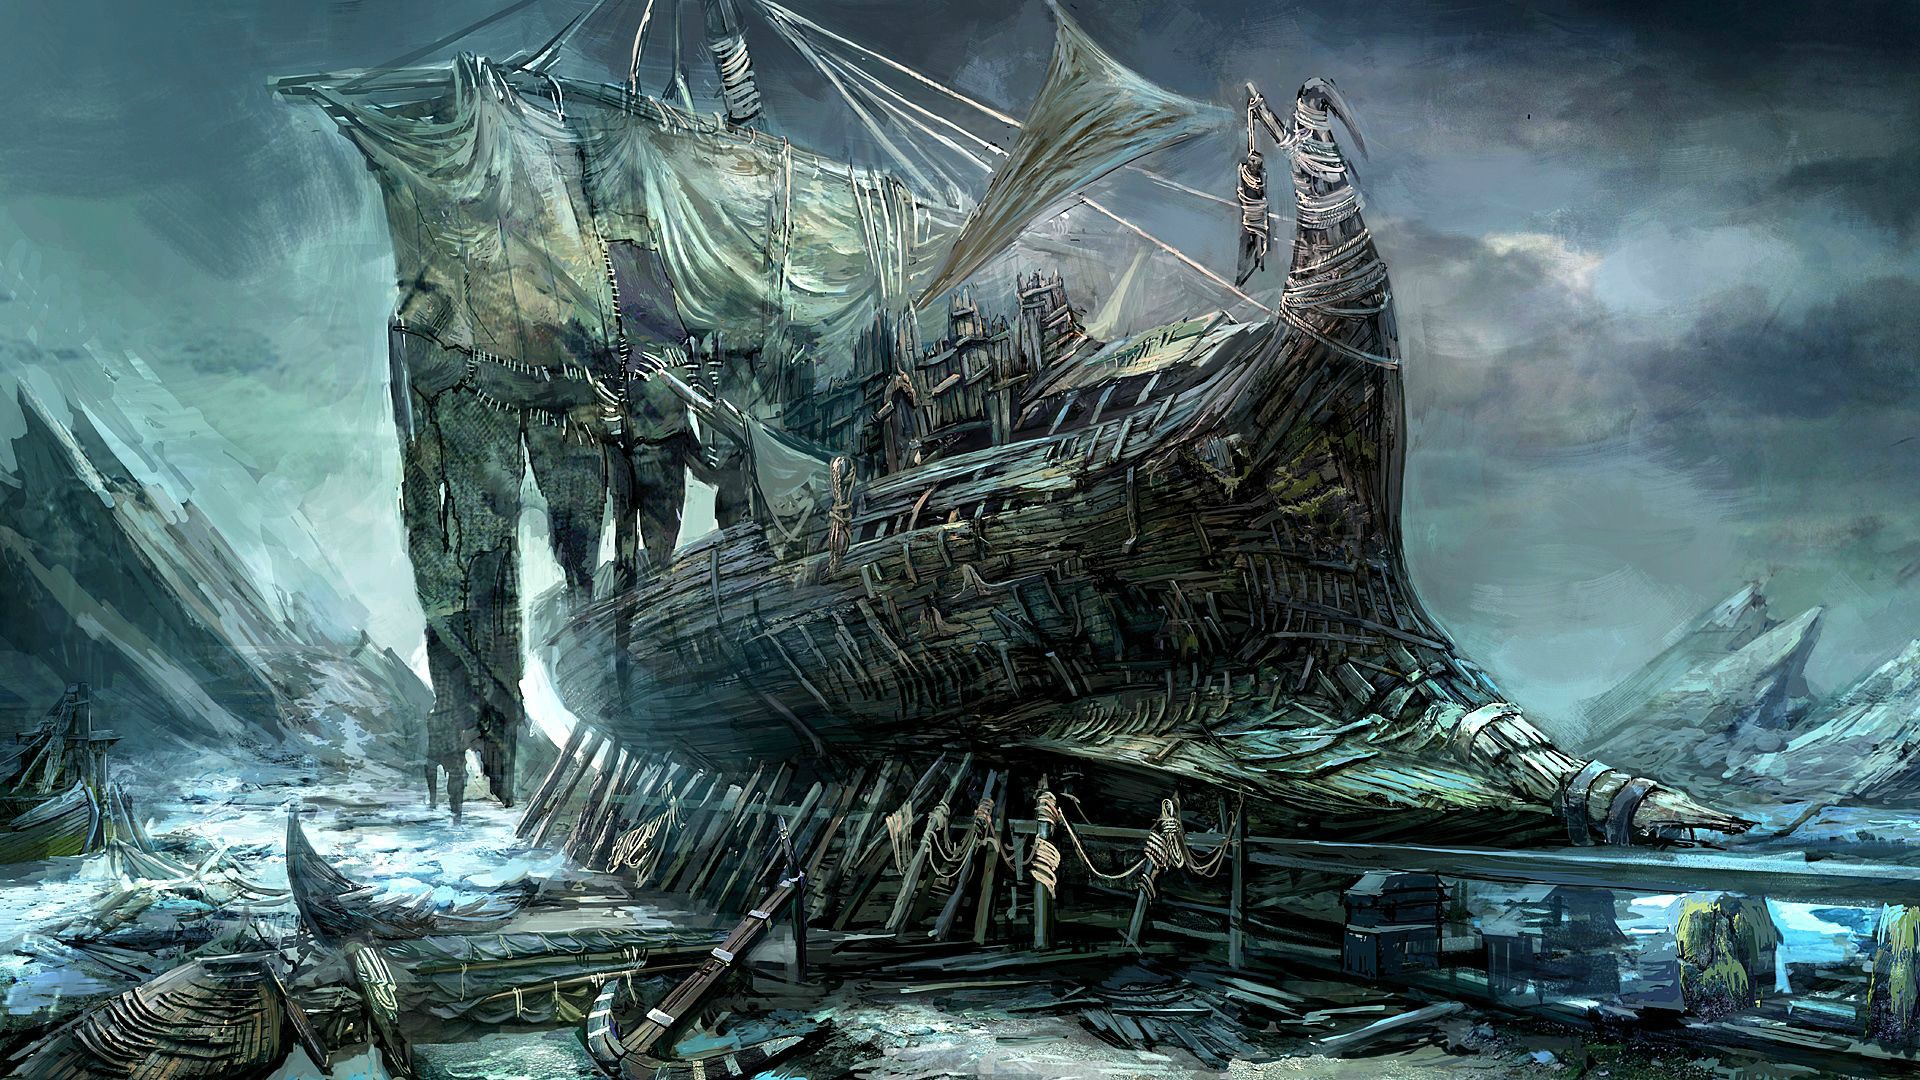 General 1920x1080 painting artwork sea ship sailing ship clouds anchors abandoned rocks vehicle fantasy art